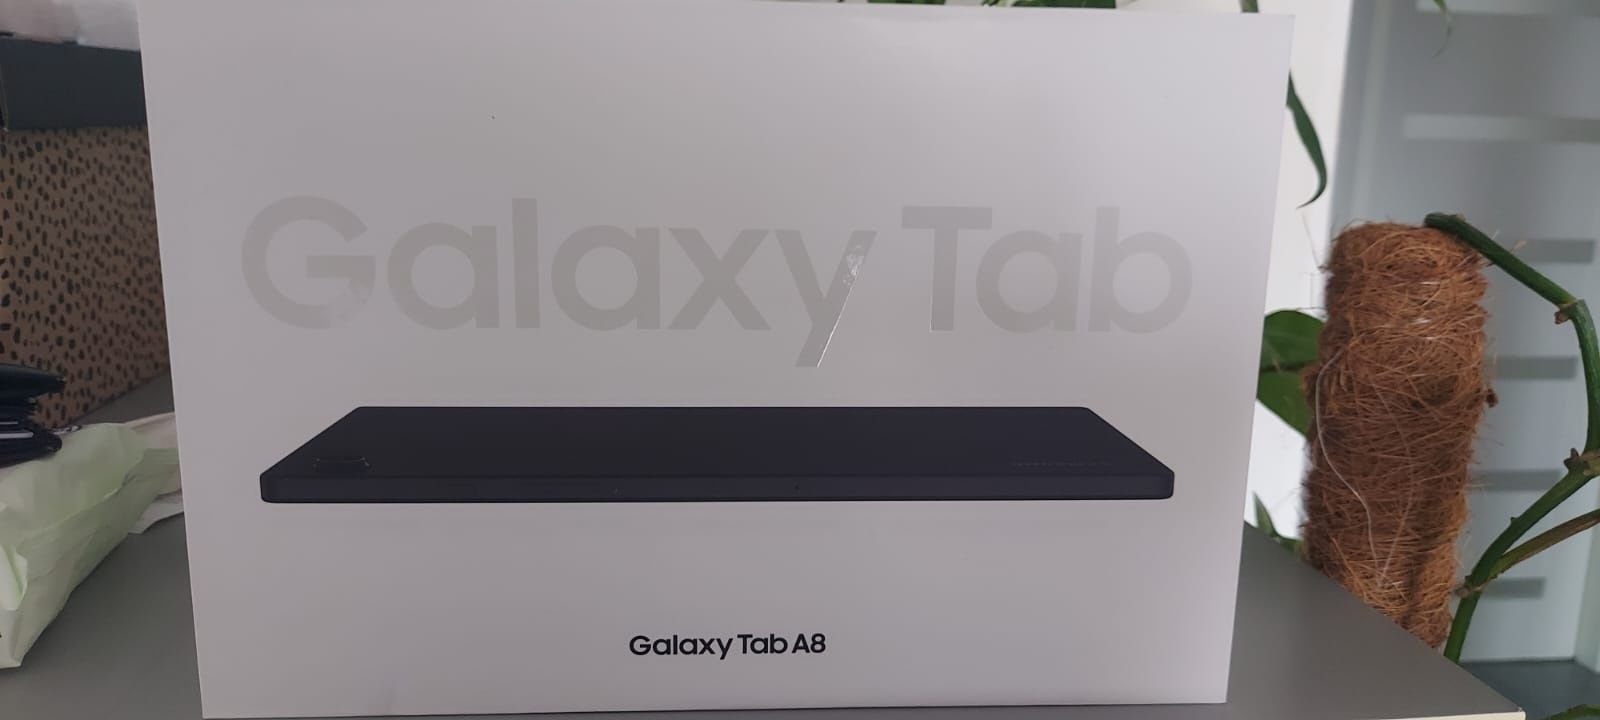 Tablet galaxy tab a 8